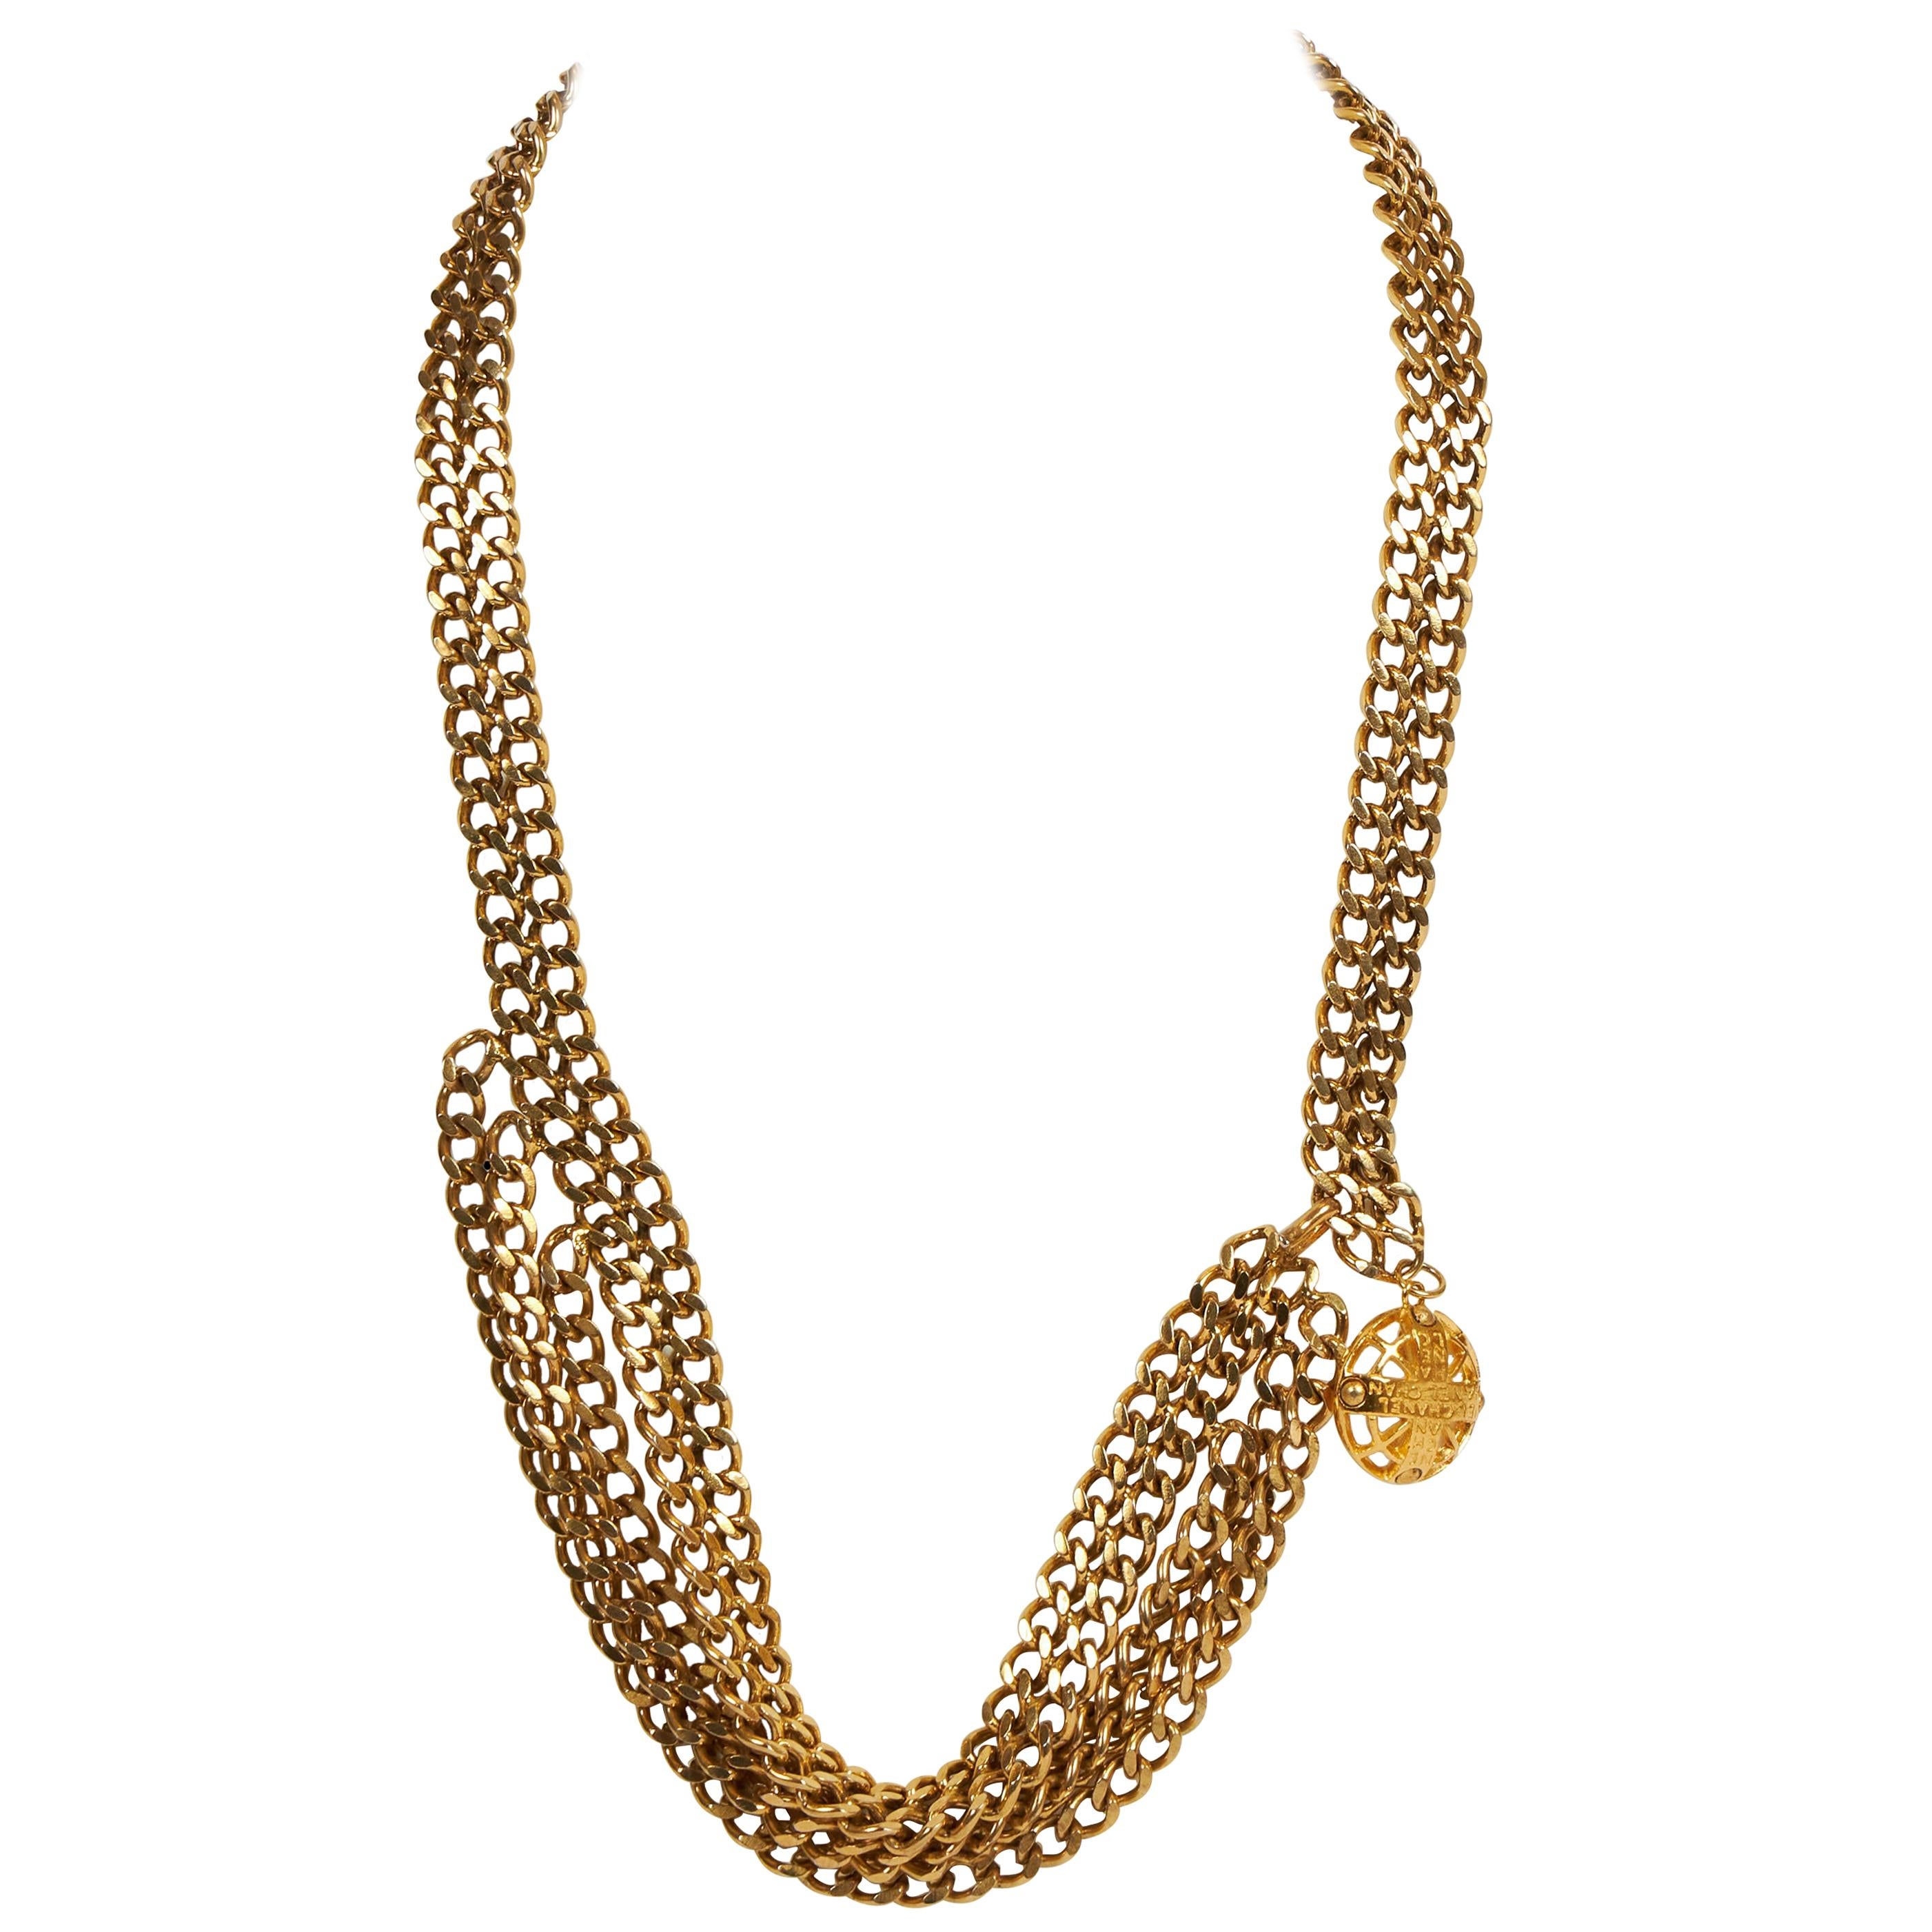 1970's Chanel Multi-Strand Chain/Necklace